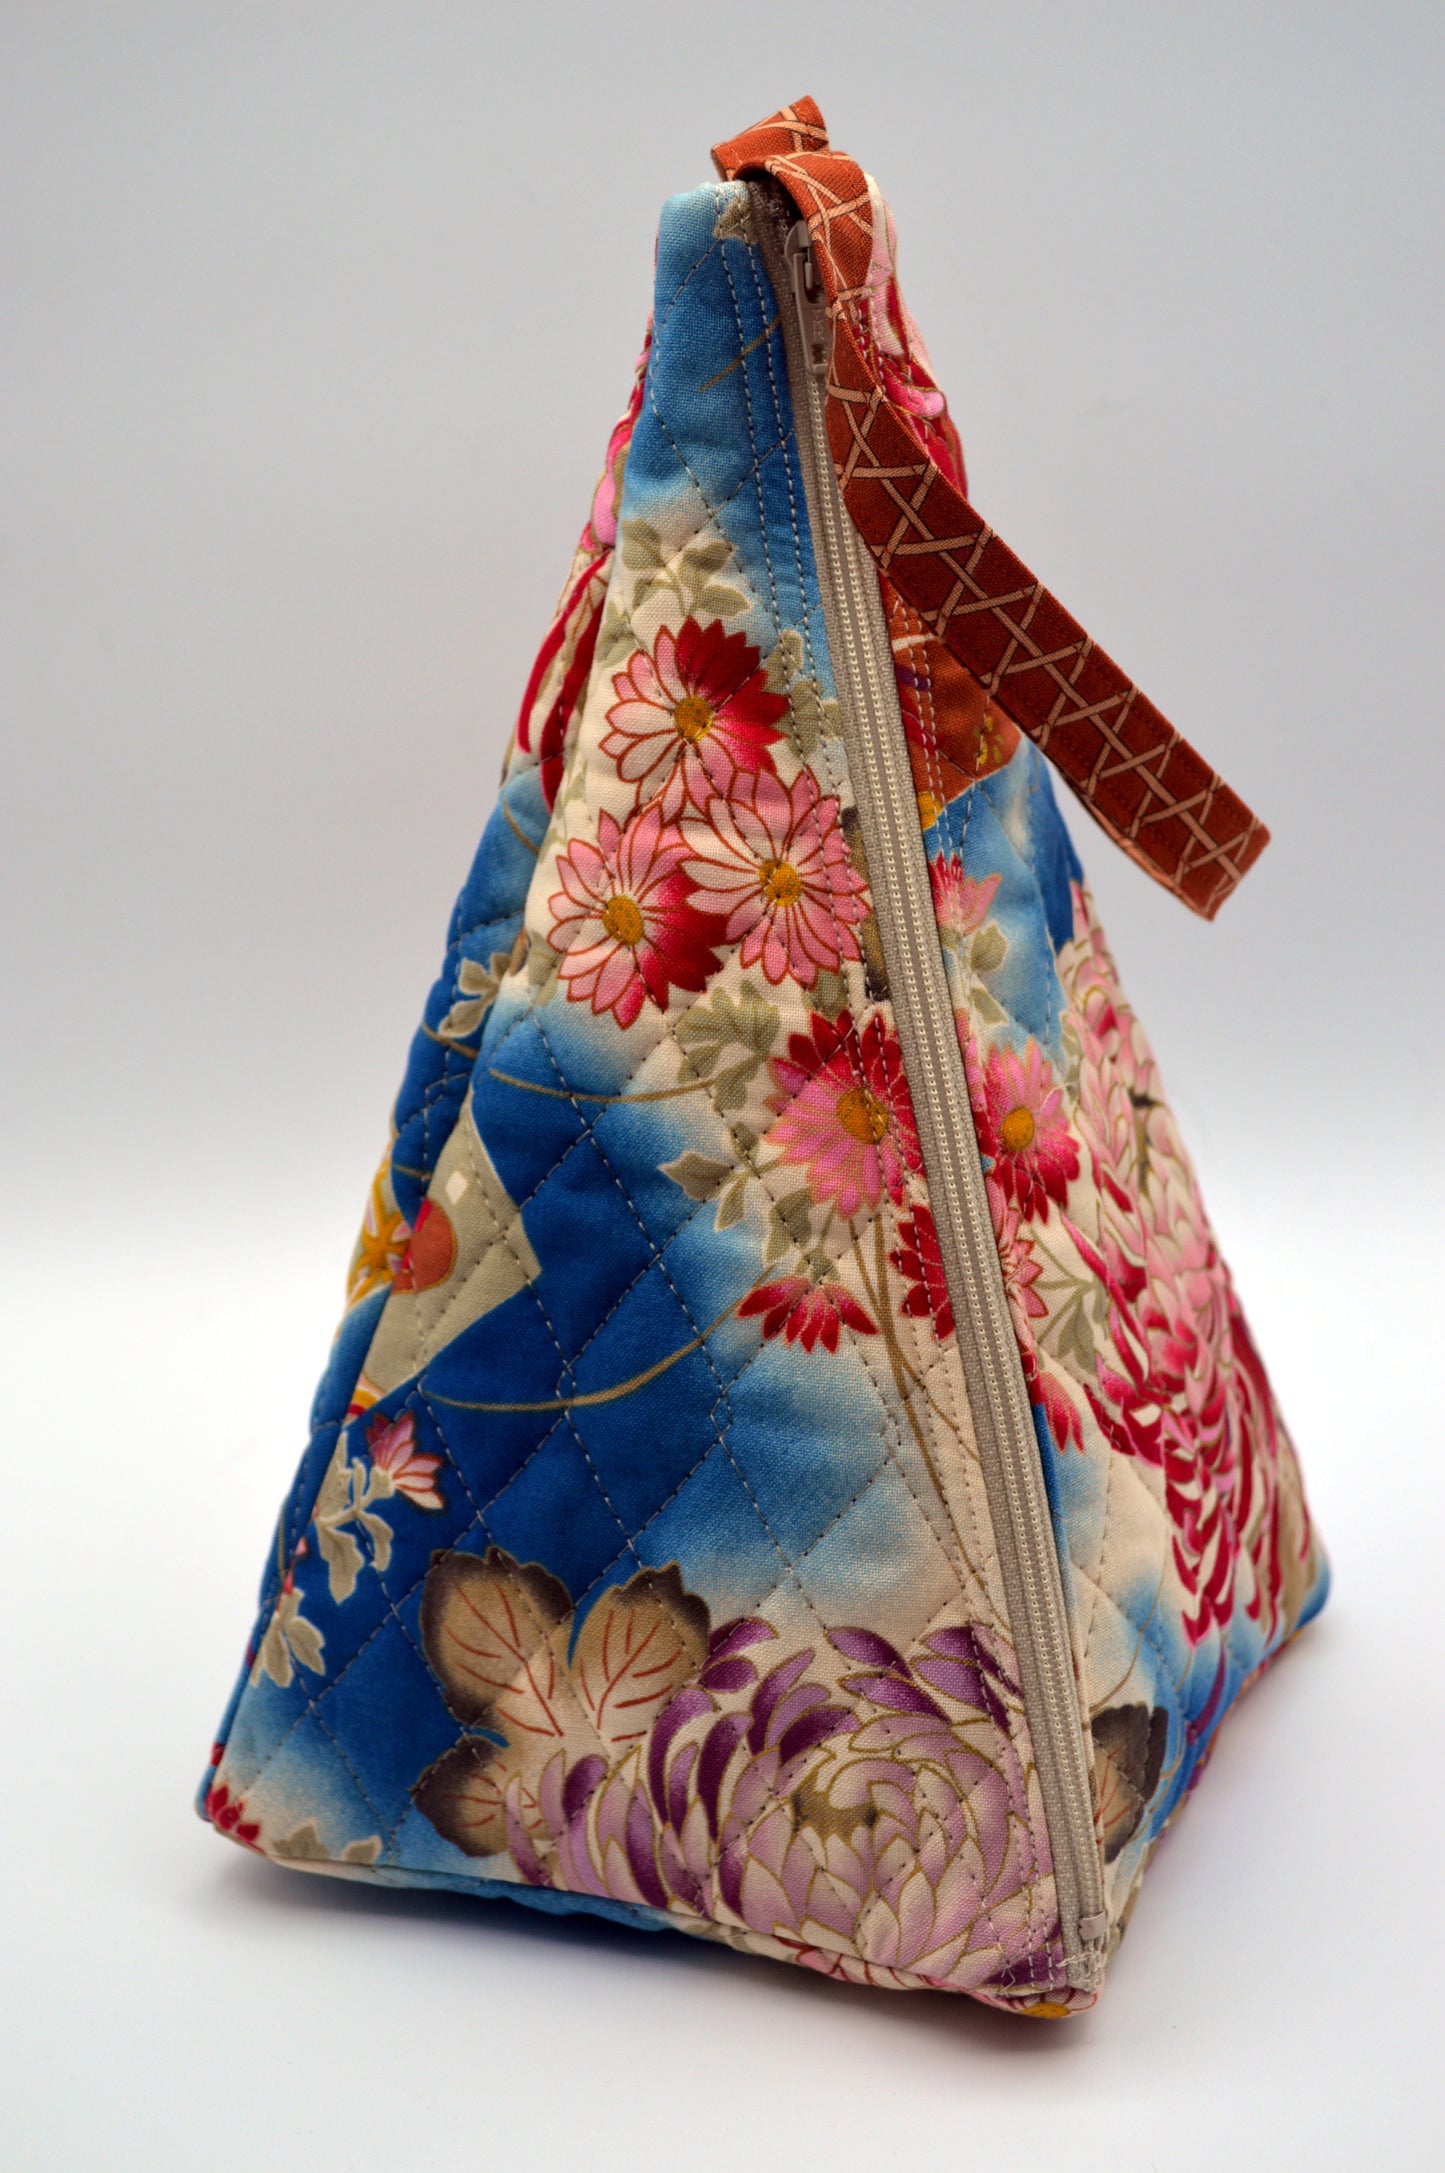 Kiku (Chrysanthemum) Medium Pyramid Bag